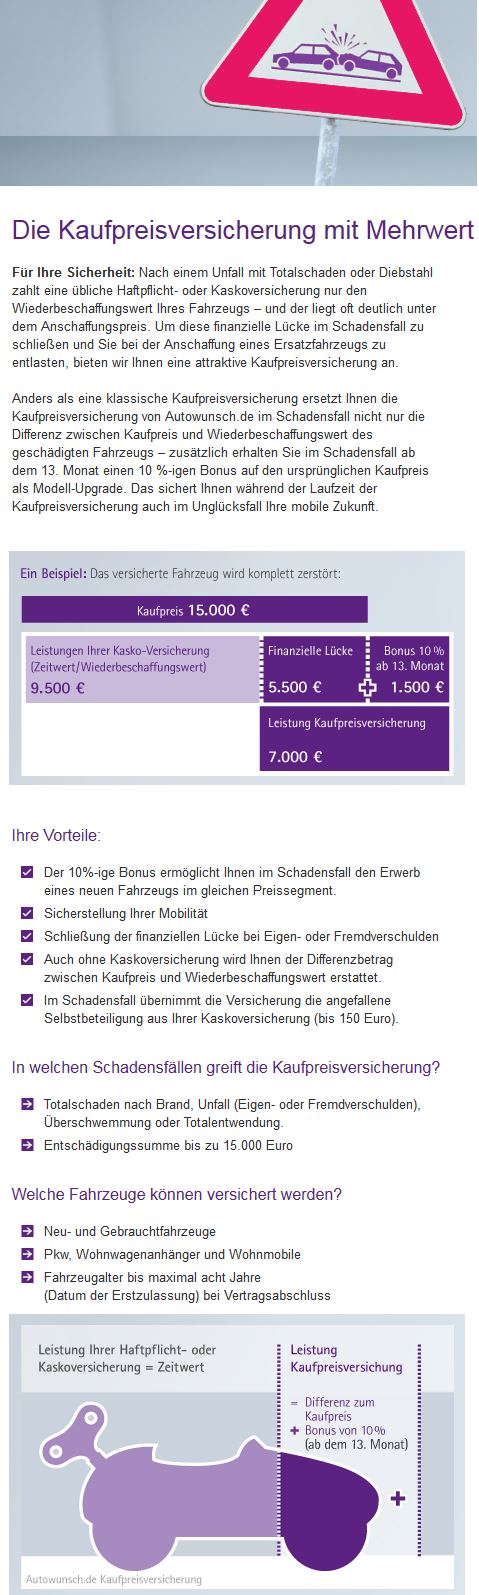 Die Kaufpreisversicherung für Autofinanzierungen bei Autowunsch.de (Screenshot www.autowunsch.de/produkte/kaufpreisversicherung/ am 20.03.2015)